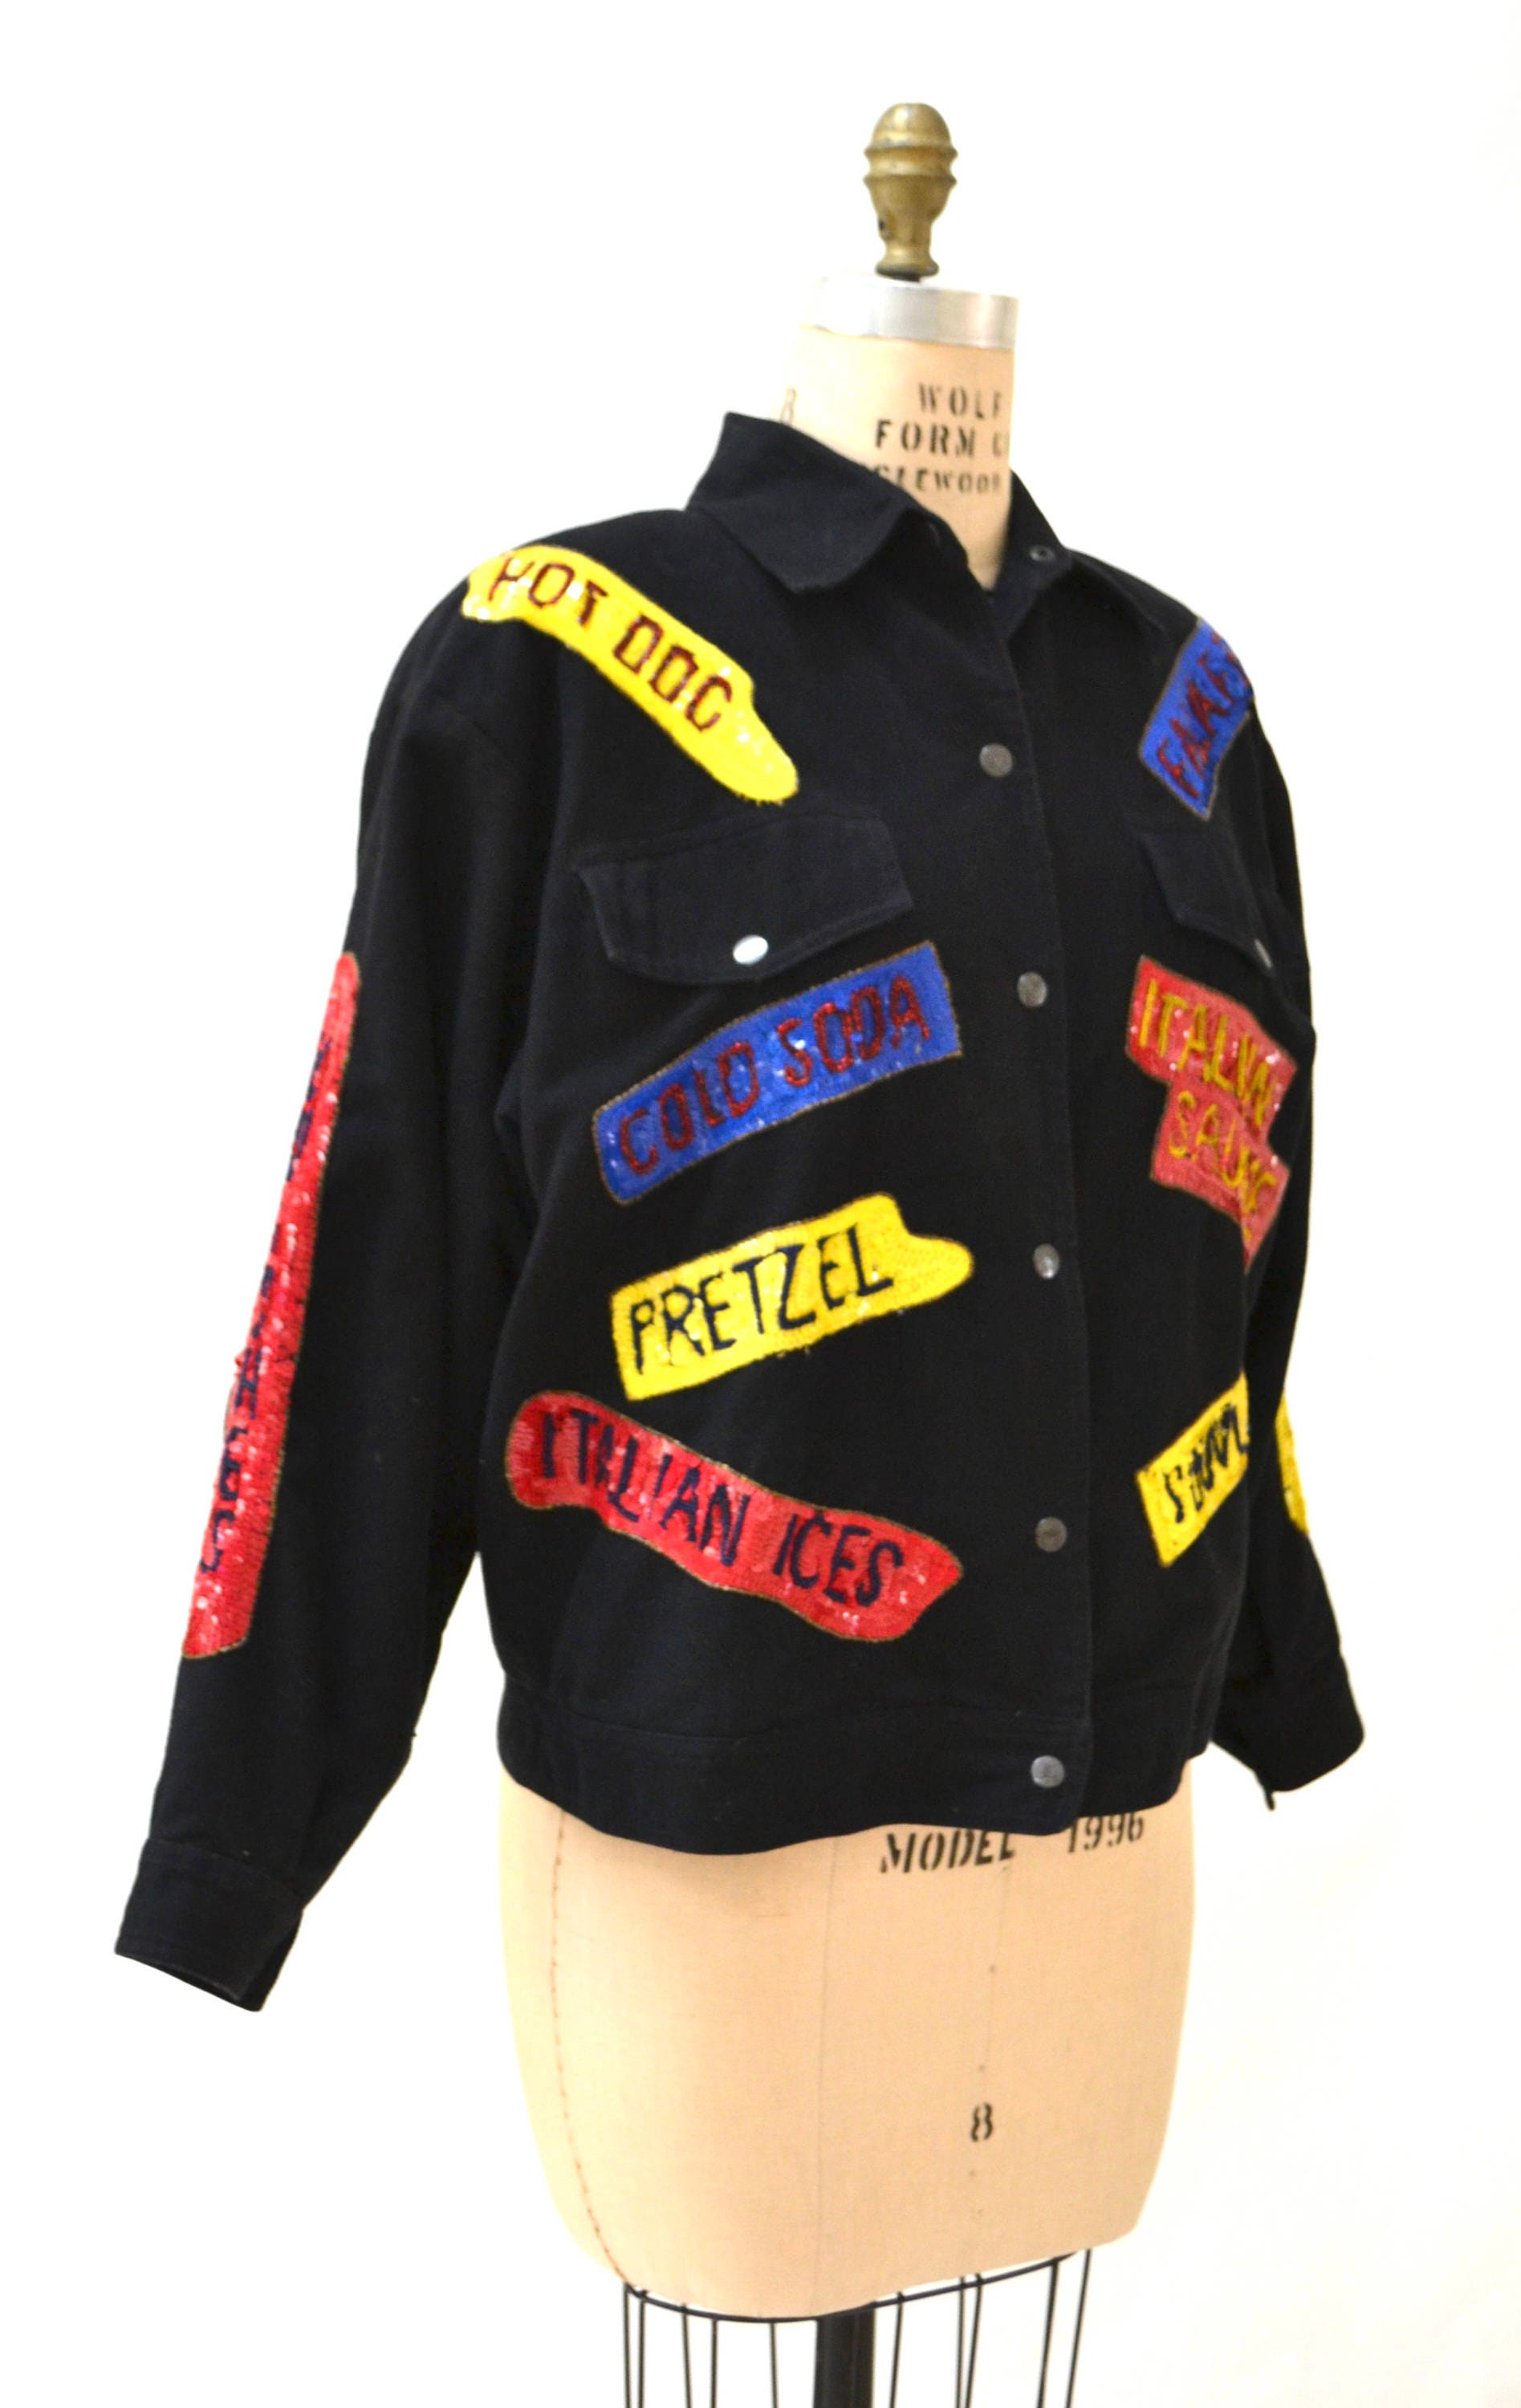 Vintage Sequin Jacket Black with Hot dog Carnival Junk Food | Etsy